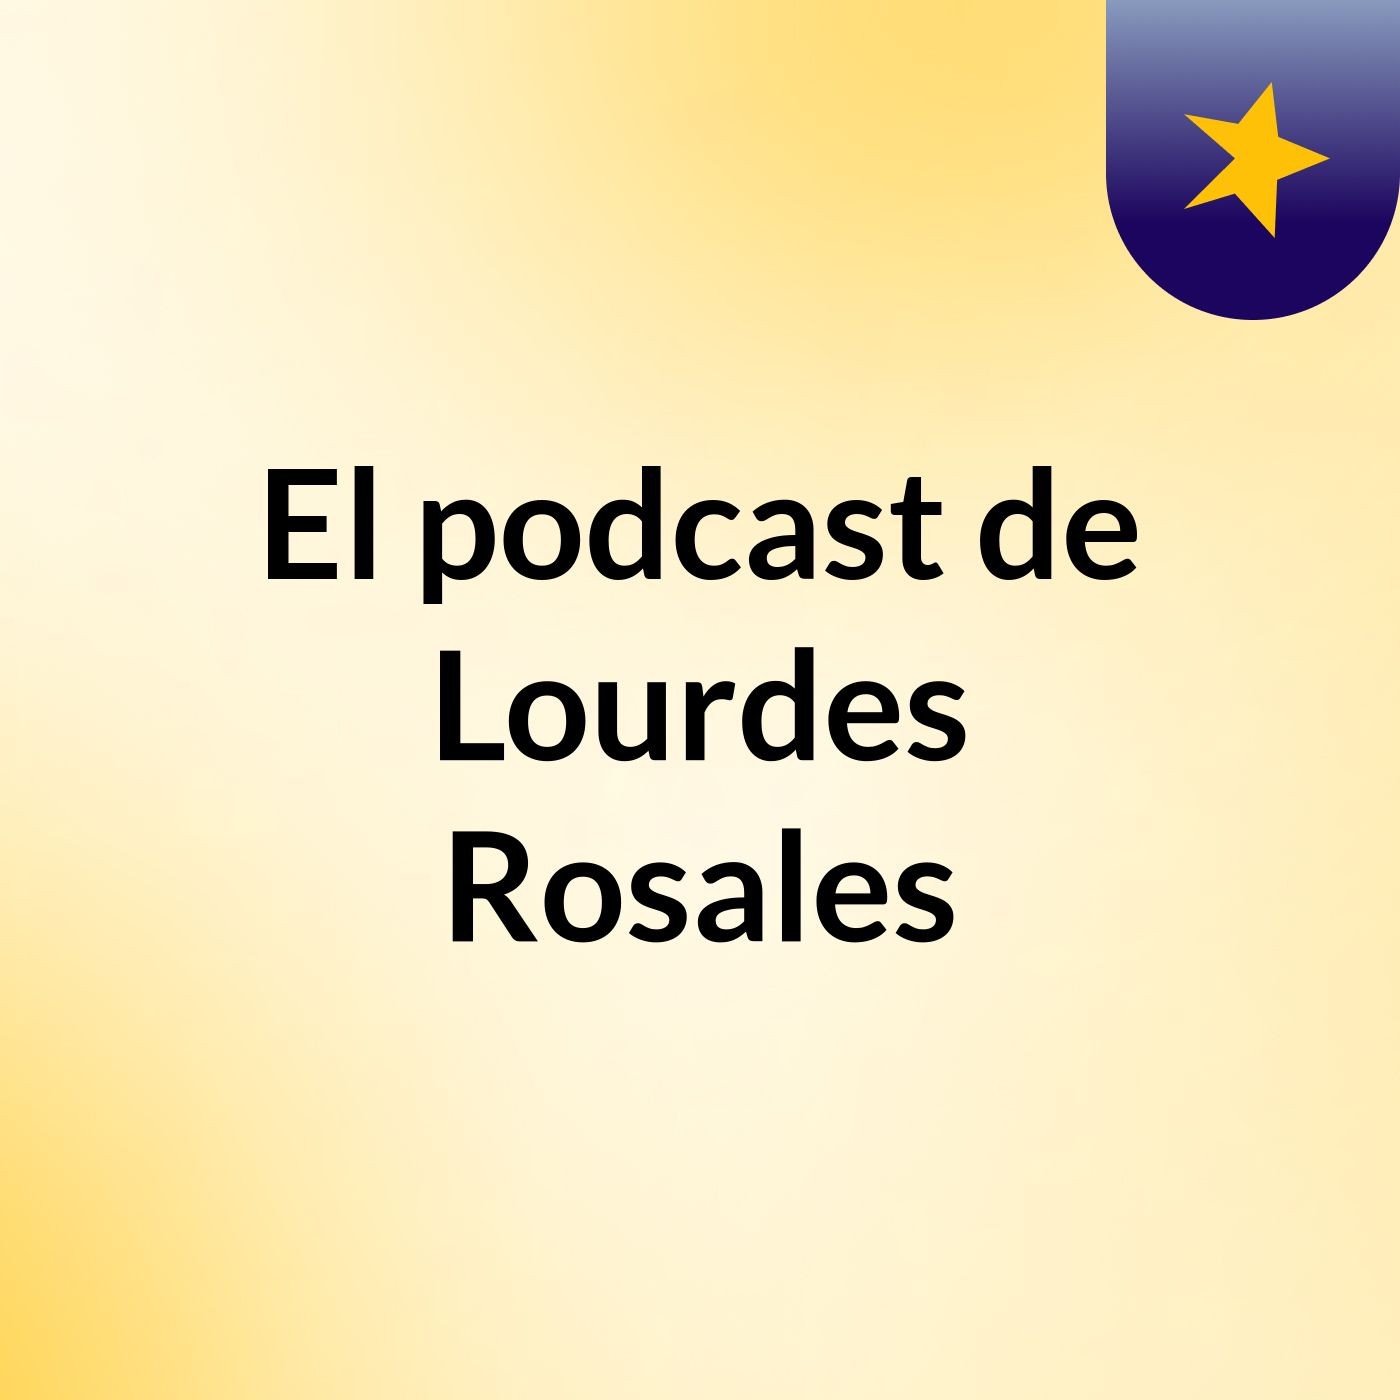 El podcast de Lourdes Rosales